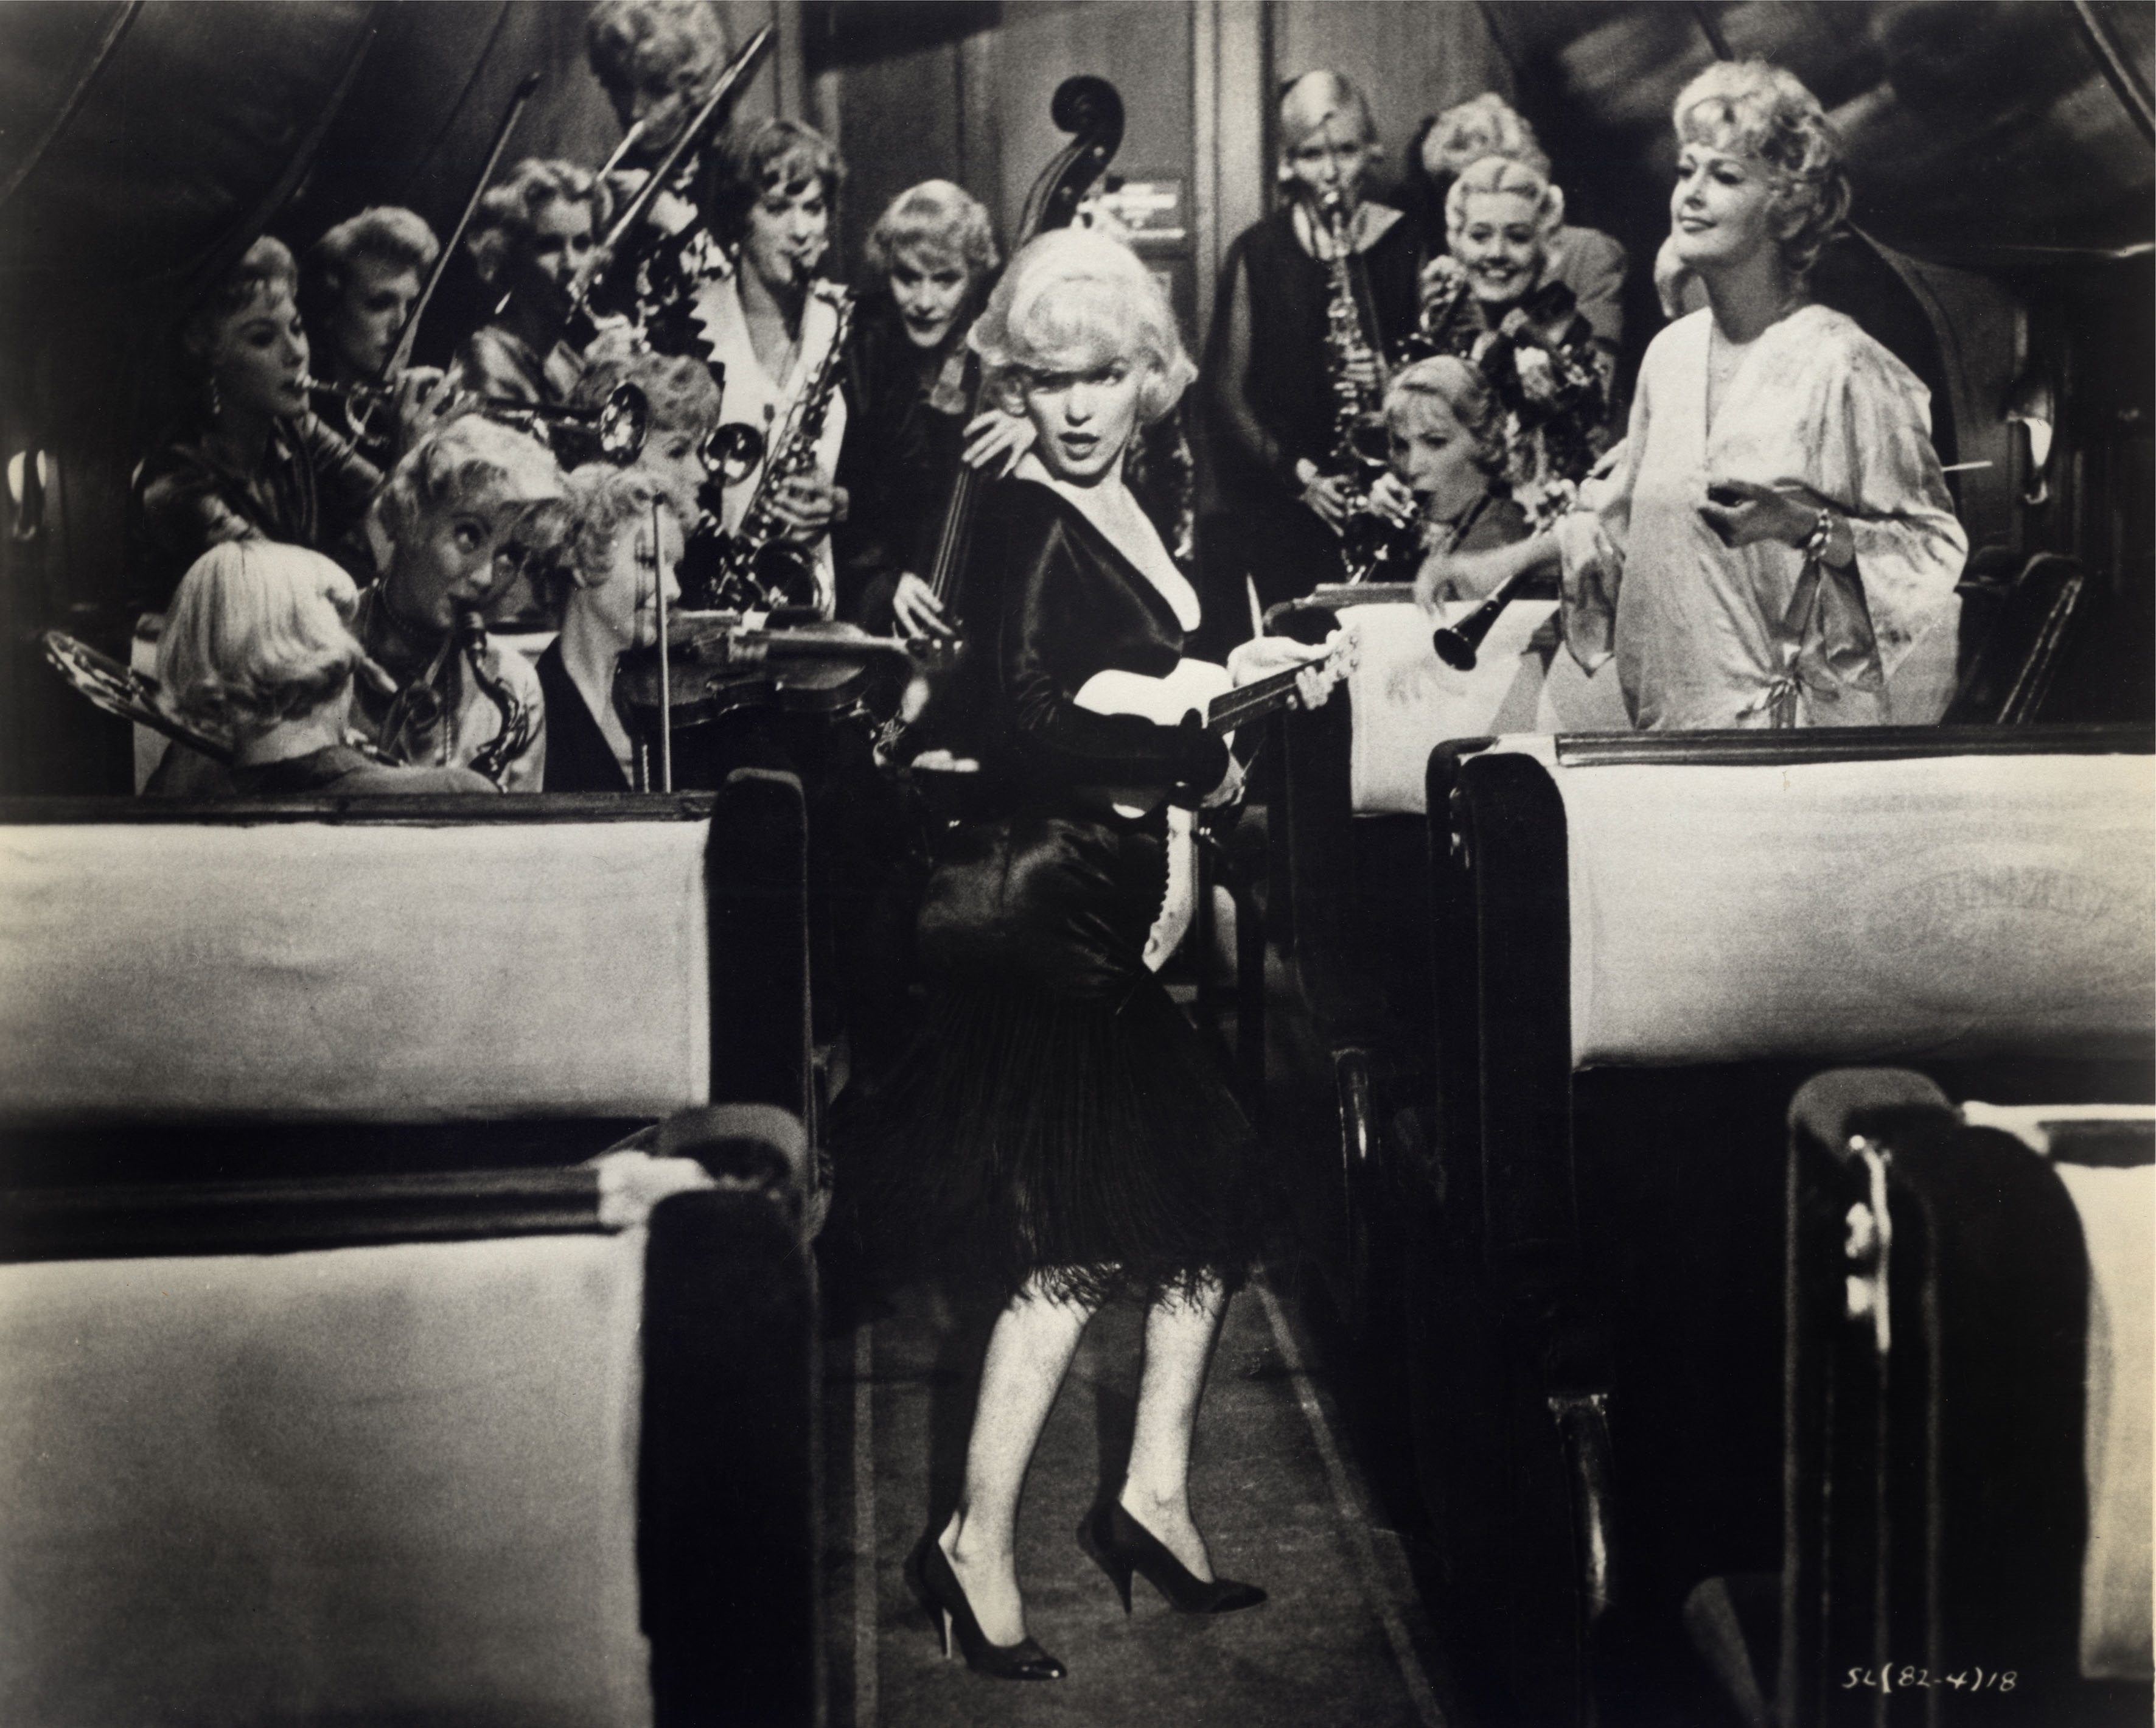 Una scena canora del film: Marilyn suona l'ukulele sulle note di Running wild